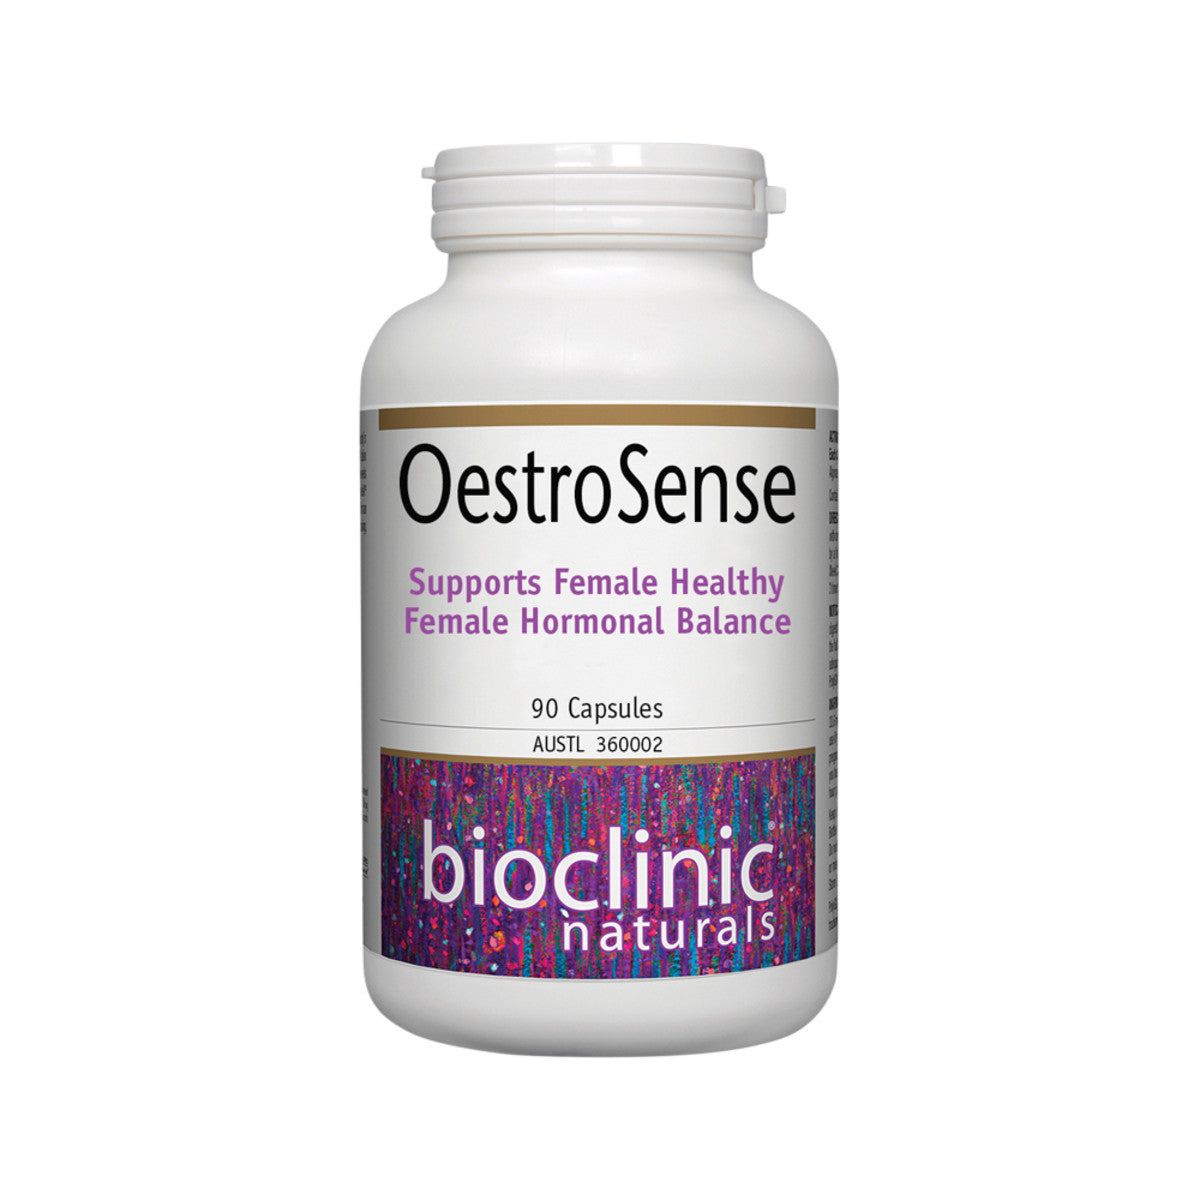 Bioclinic Naturals - OestroSense